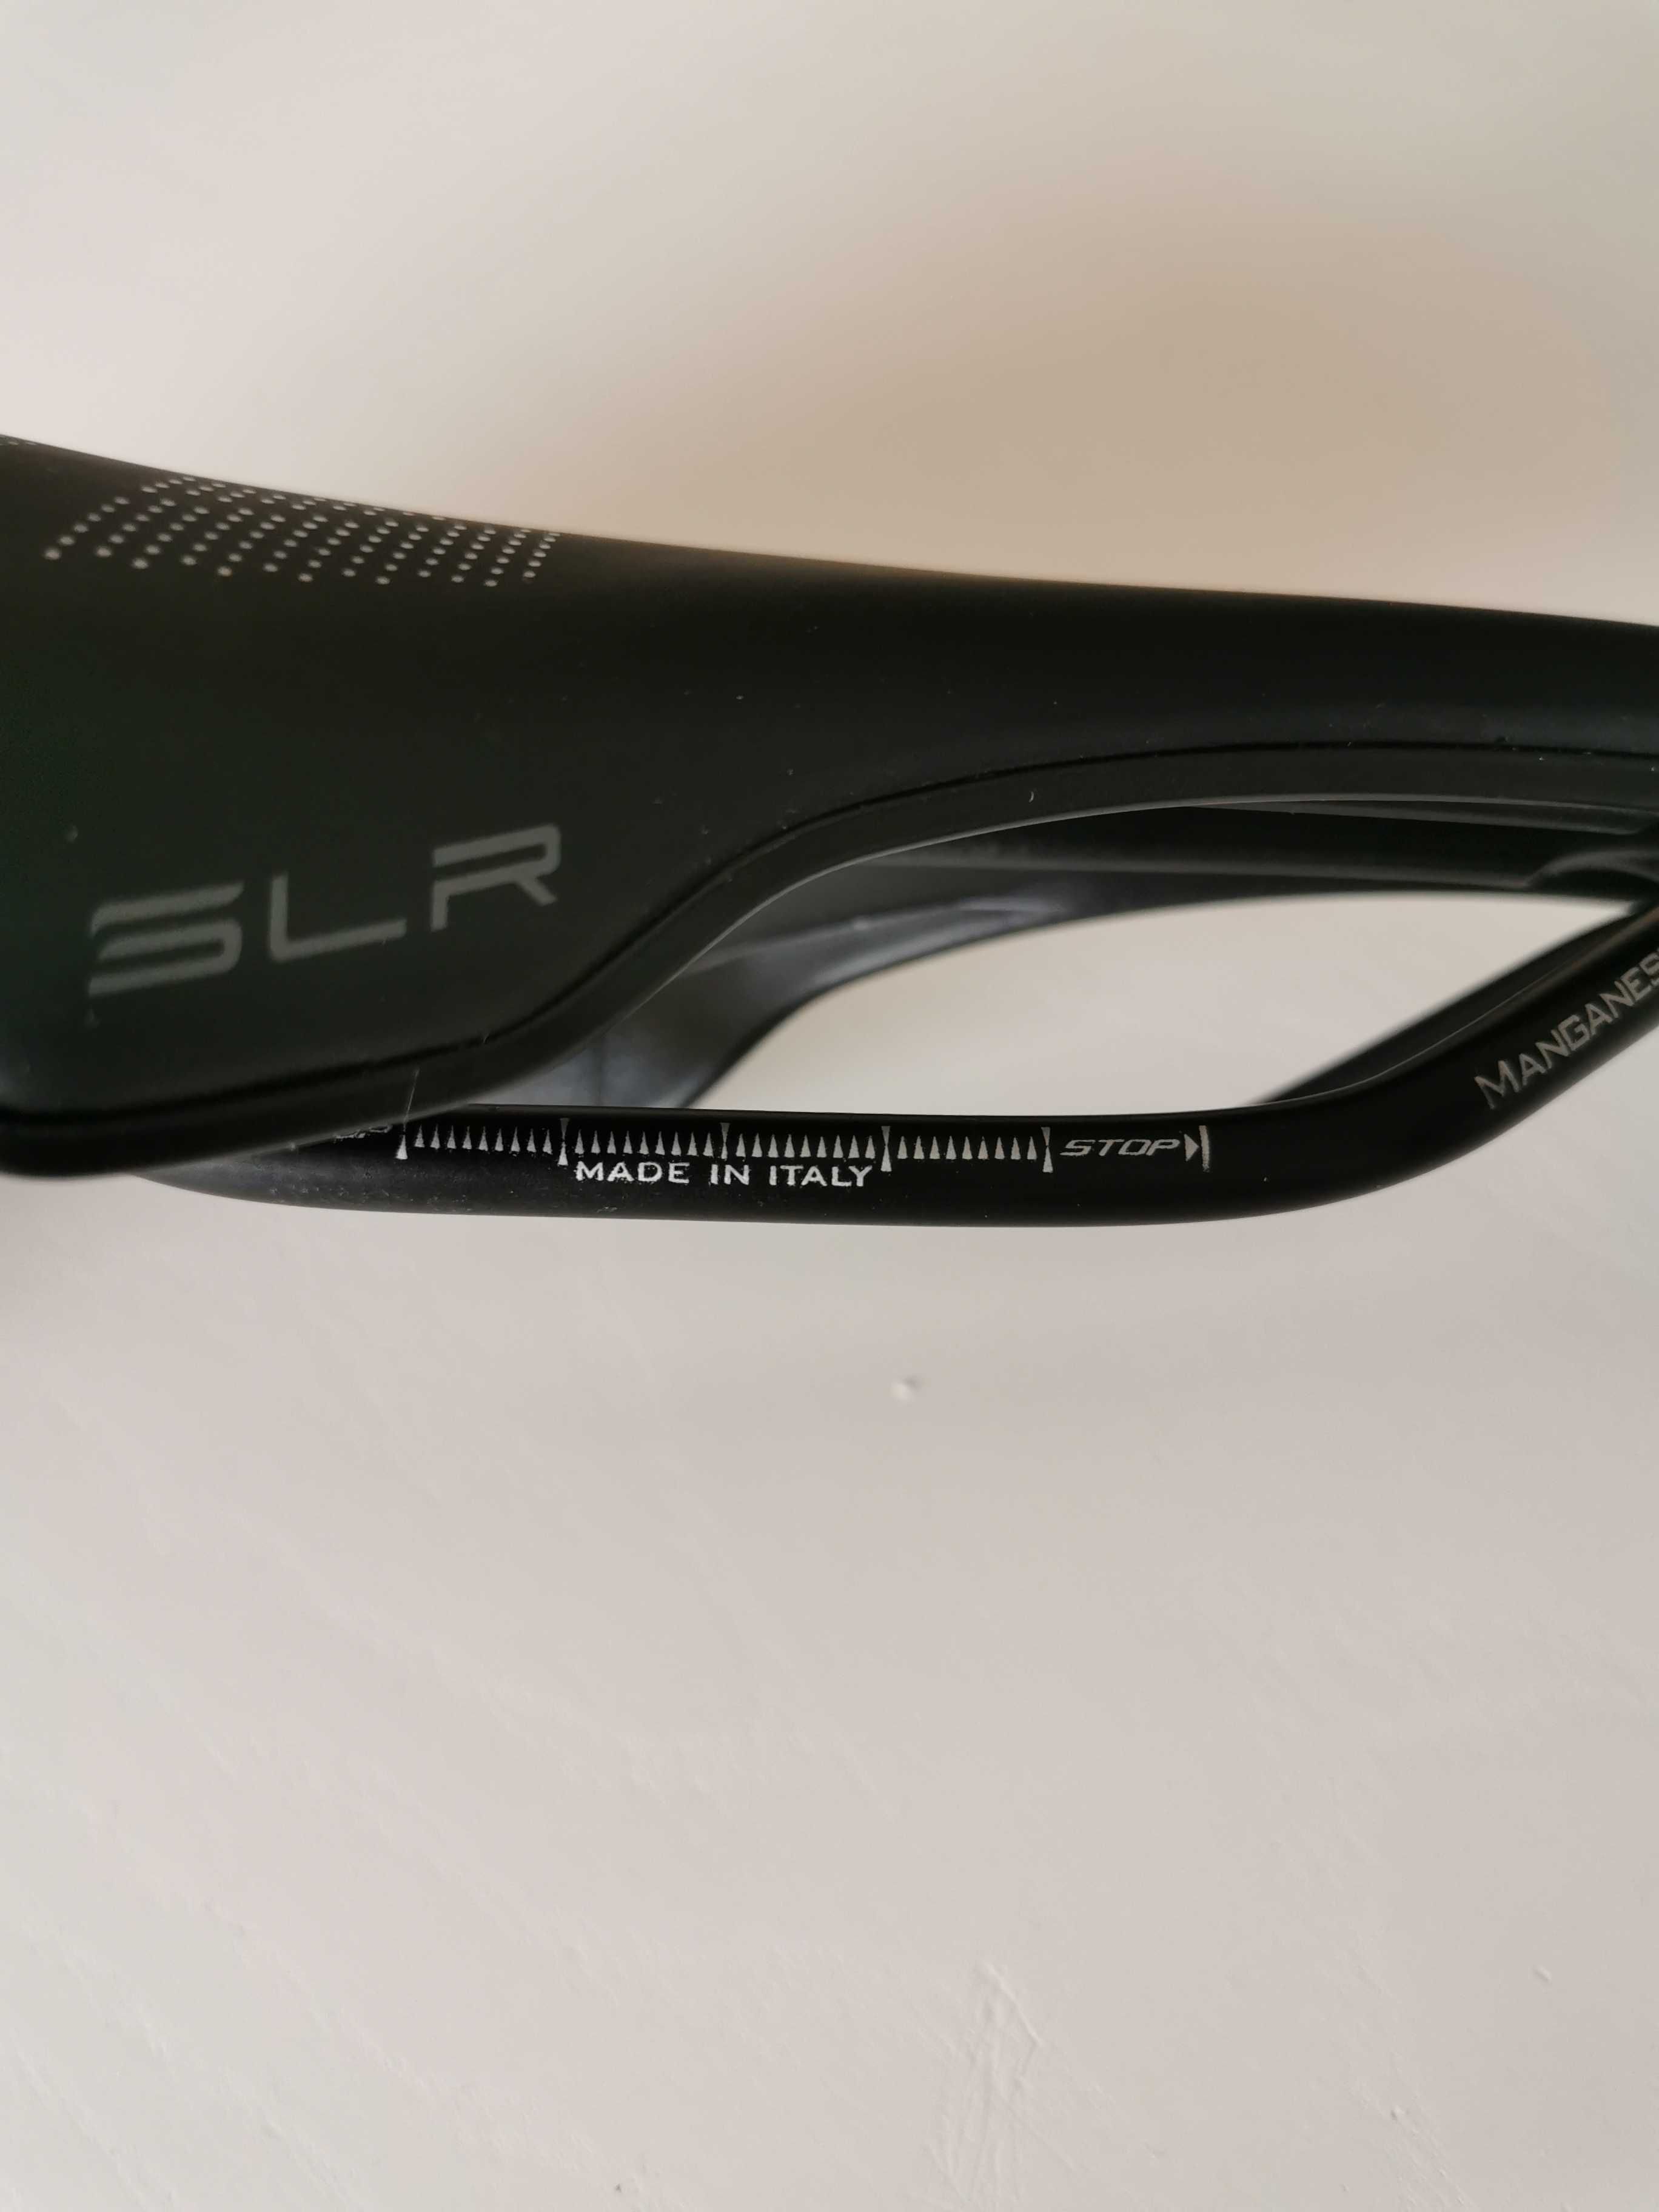 Siodelko Selle Italia SLR Boost S3